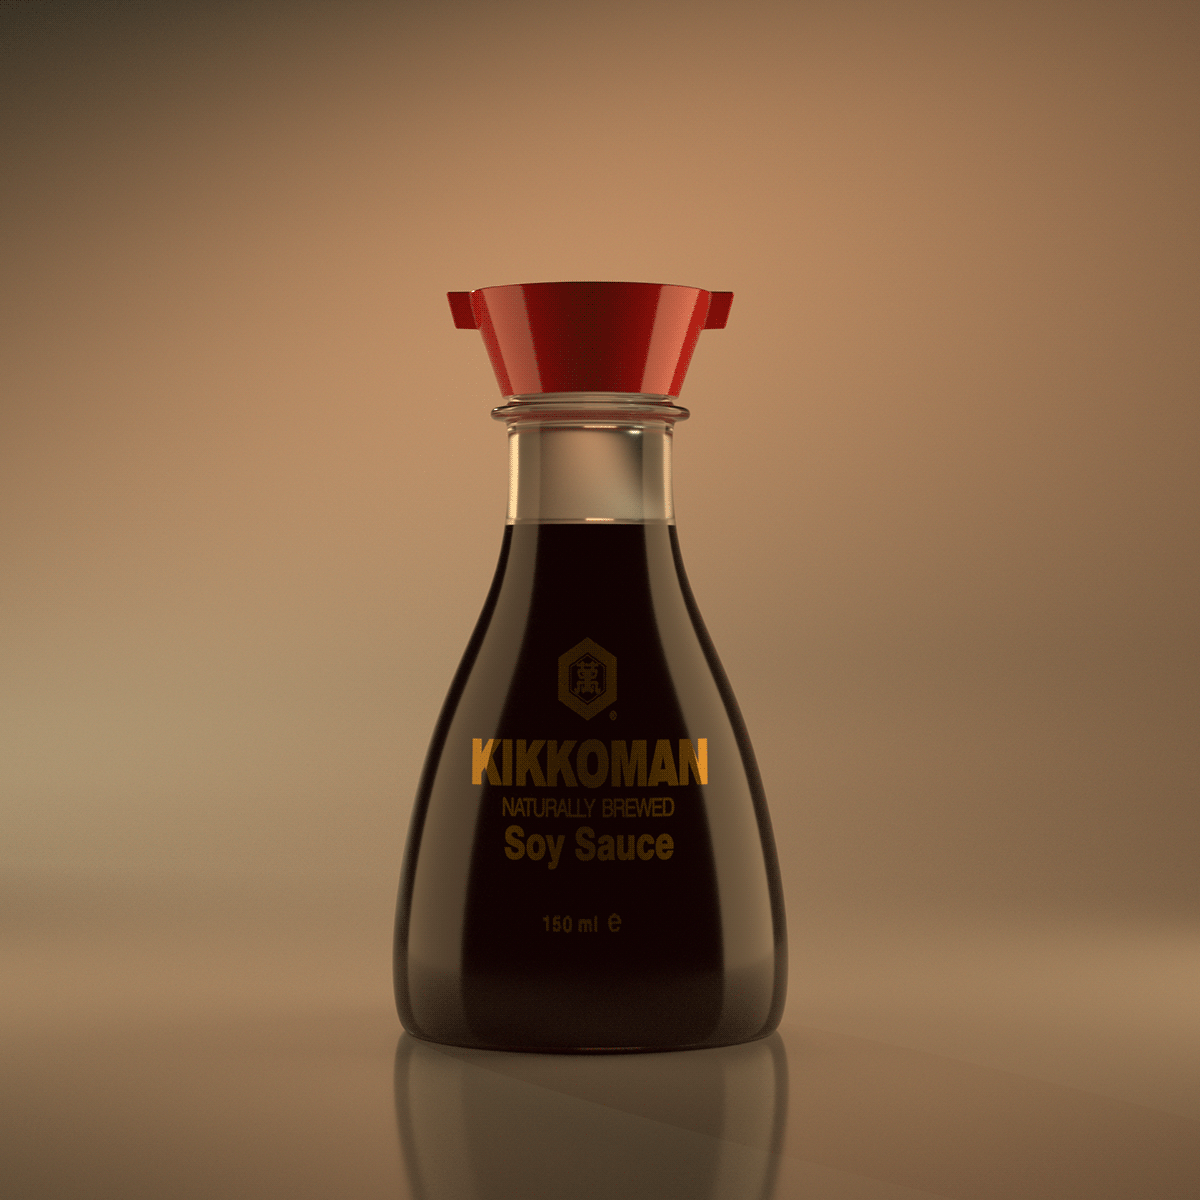 bottle kikkoman soy sauce packaging design blender3d 3d modeling blender 3D